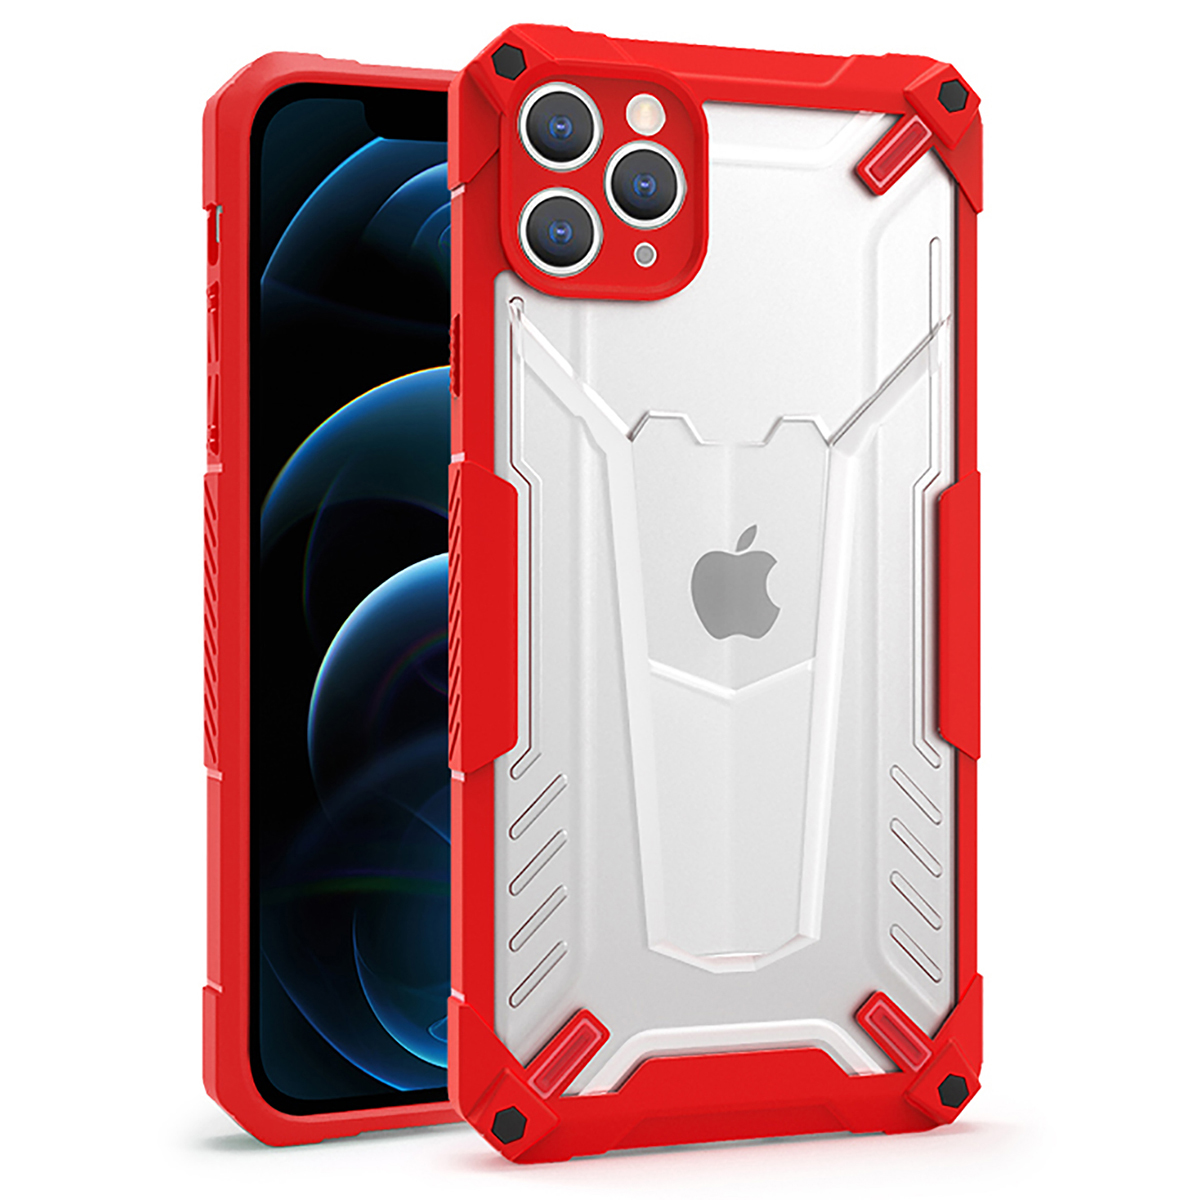 Kryt odolný Protect Hybrid pro Apple iPhone 11 Pro , barva červená